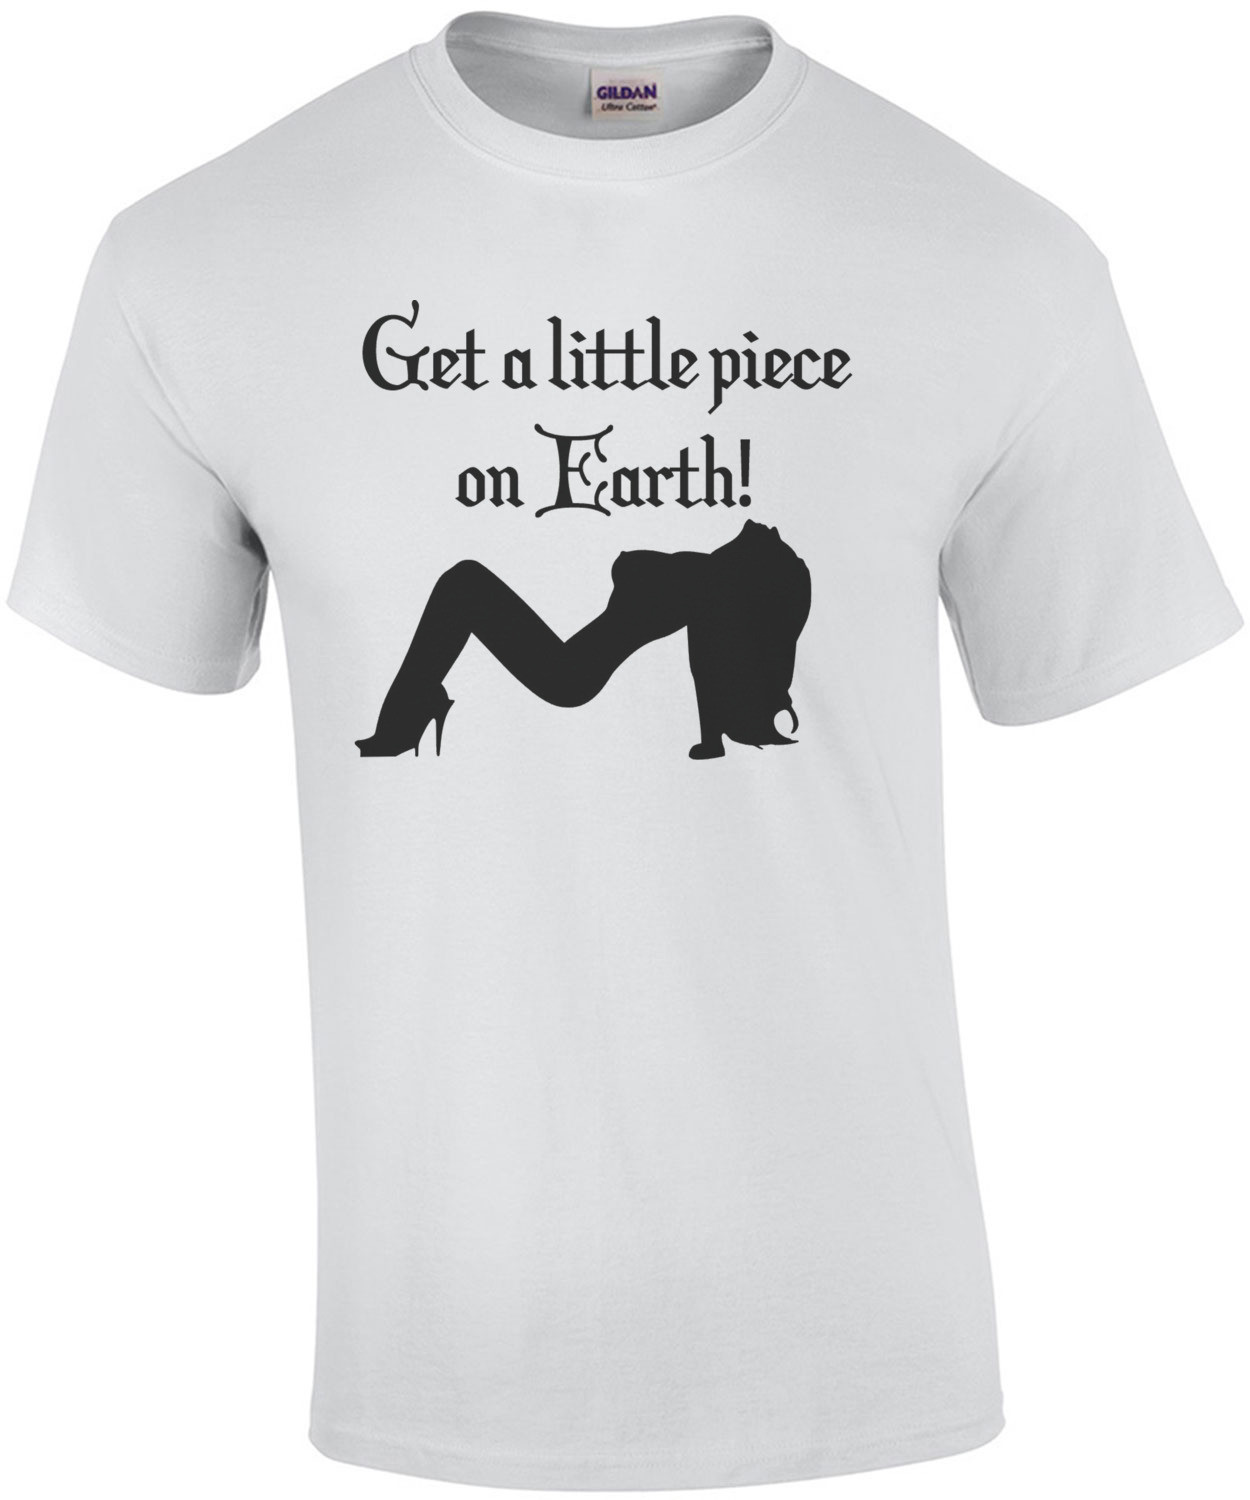 Get a little piece on Earth Shirt